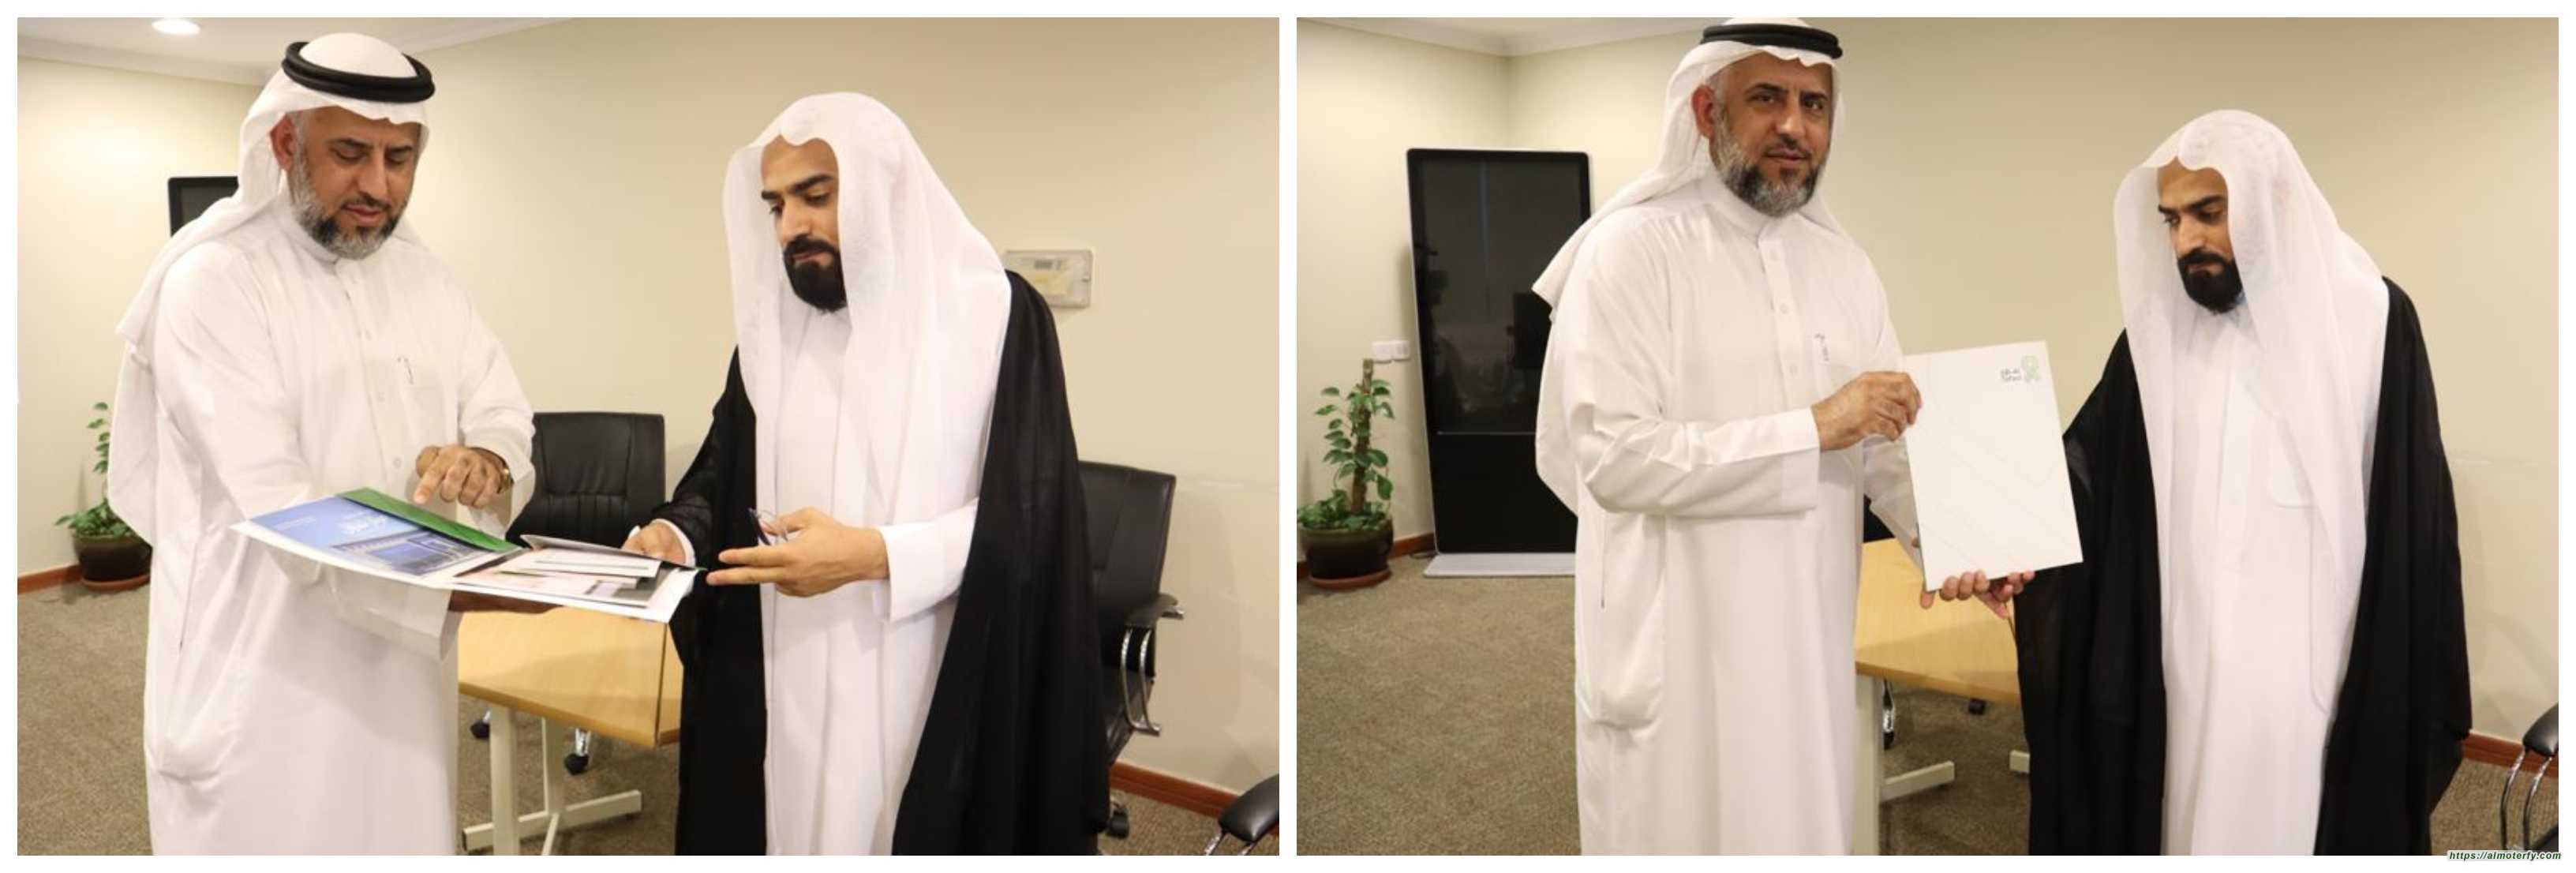 السيد باقر السلمان  يزور مقر جمعية مكافحة السرطان الخيرية بالأحساء(تفاؤل)